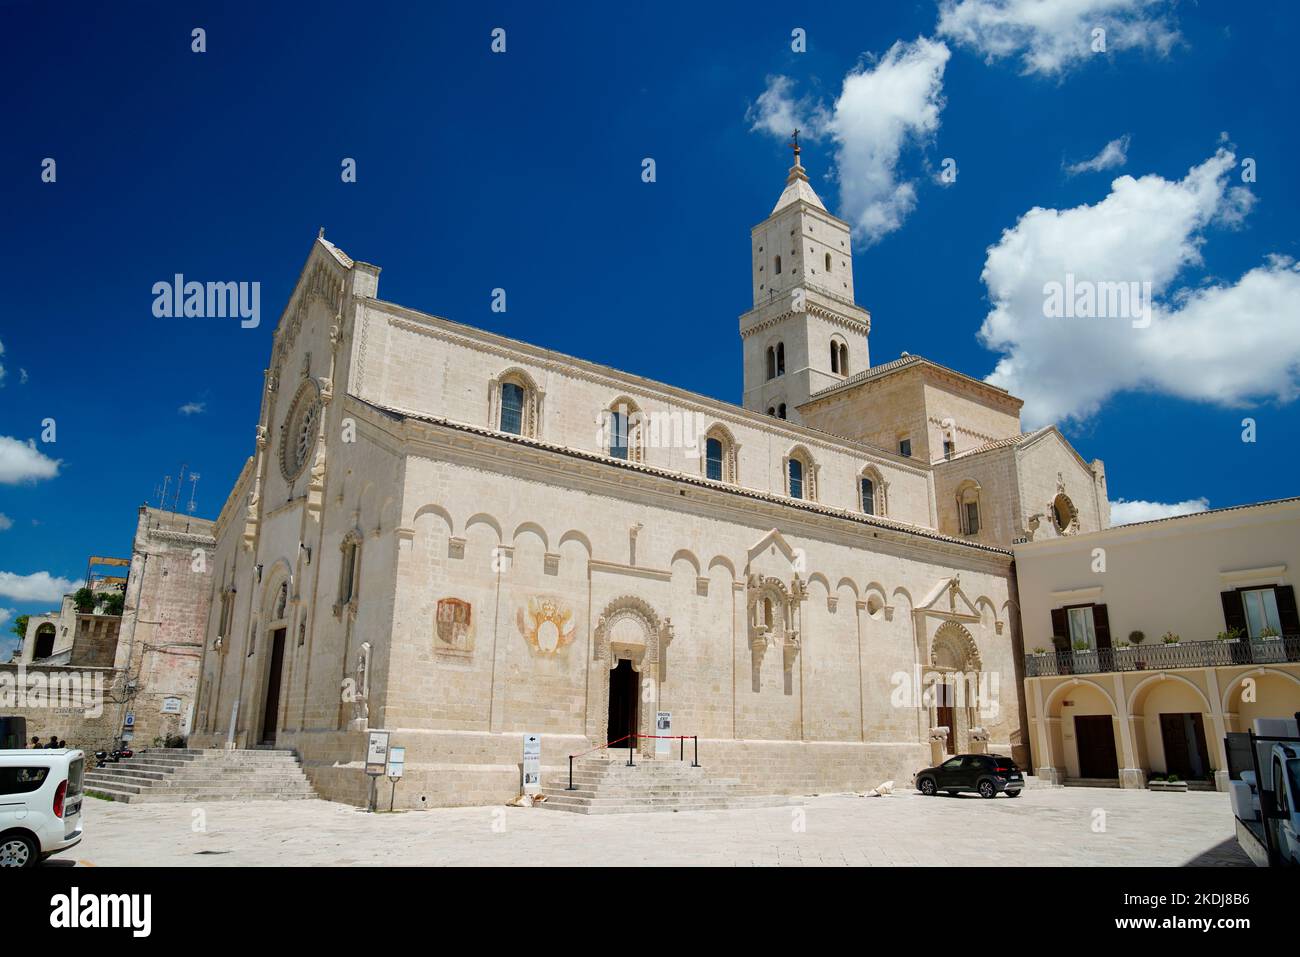 Piazza Duomo della Cattedrale,Matera,Region Basilicata,Italy Stock Photo